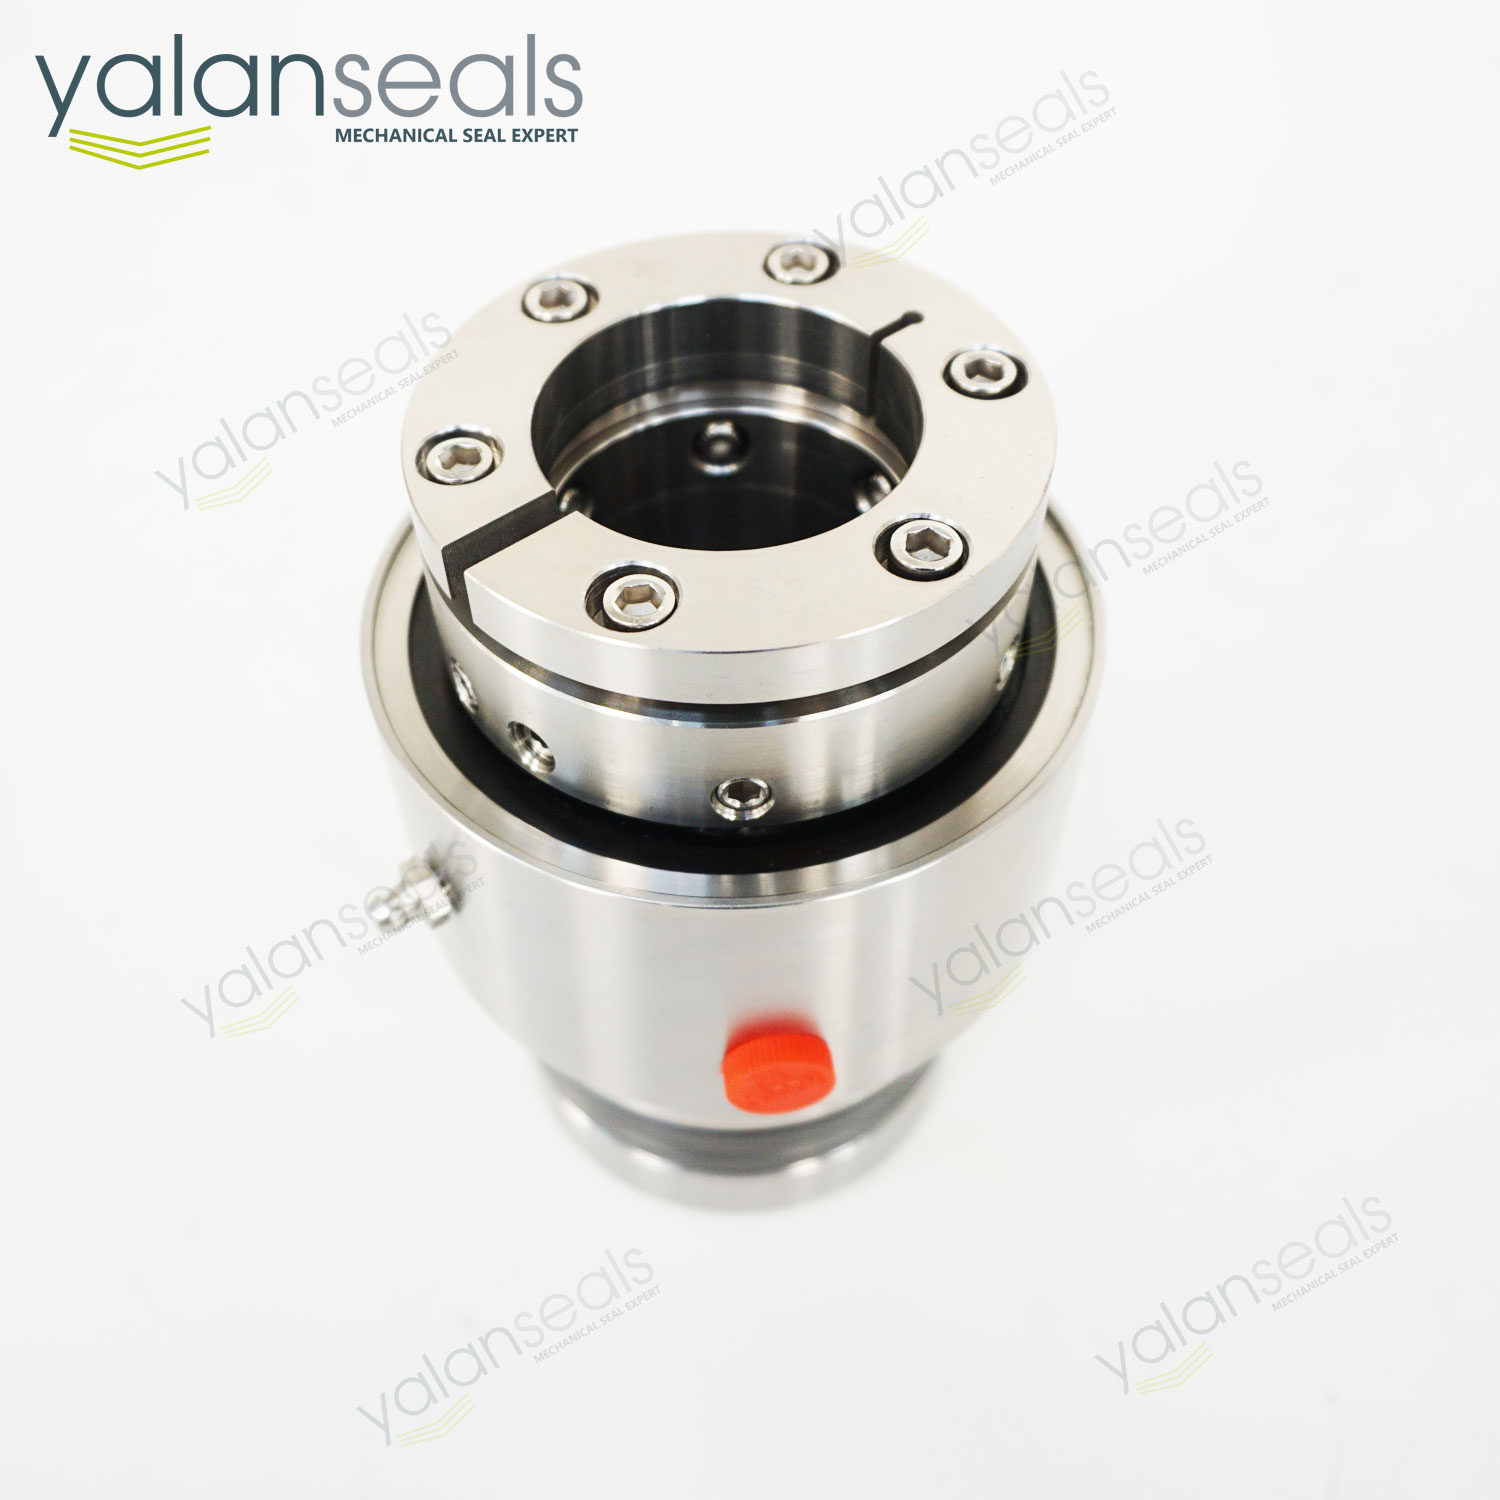 YALAN SCC428 Mechanical Seal for Sharpe Mixers